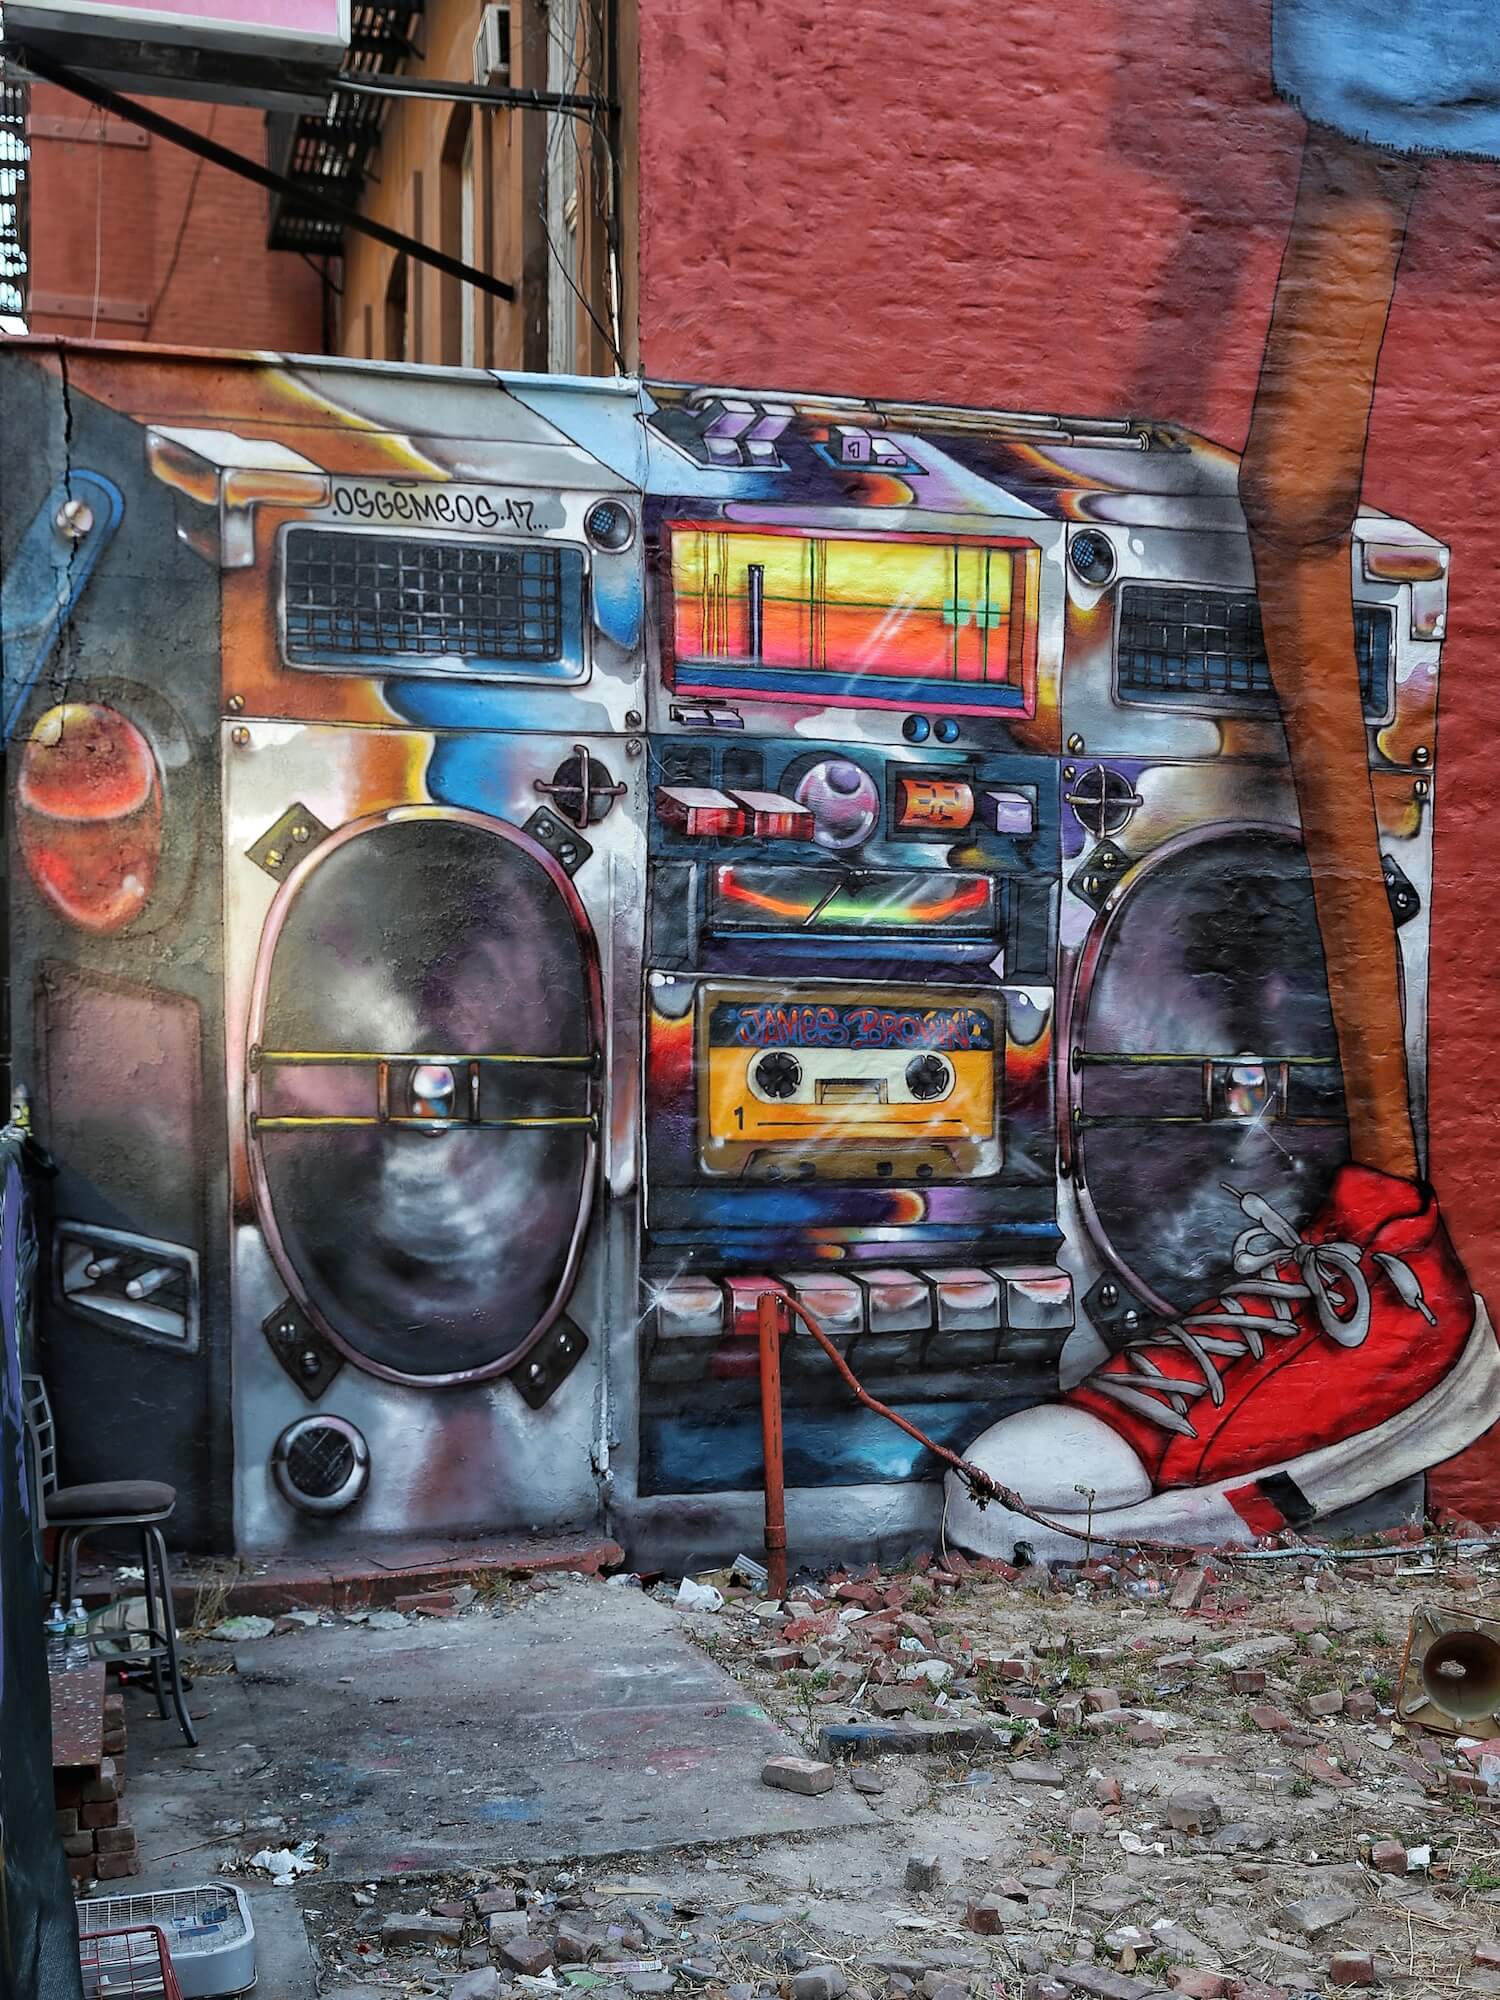 os-gemeos-new-york-graffiti-street-art-hip-hop-martha-cooper-pc-just-a-spectator-1